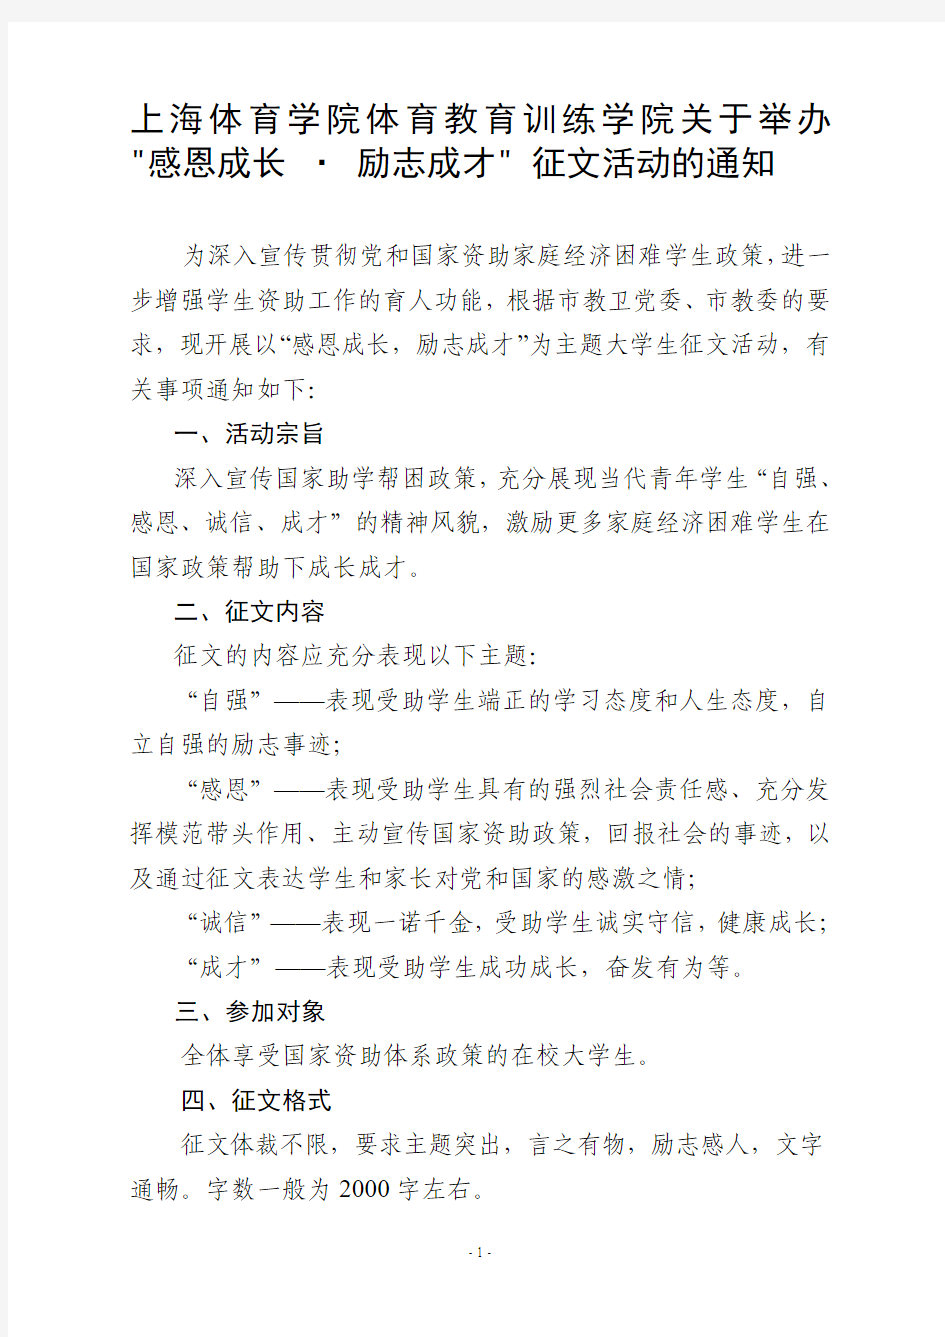 上海体育学院体育教育训练学院关于举办“感恩成长[1].励志成才”征文活动的通知 (2)